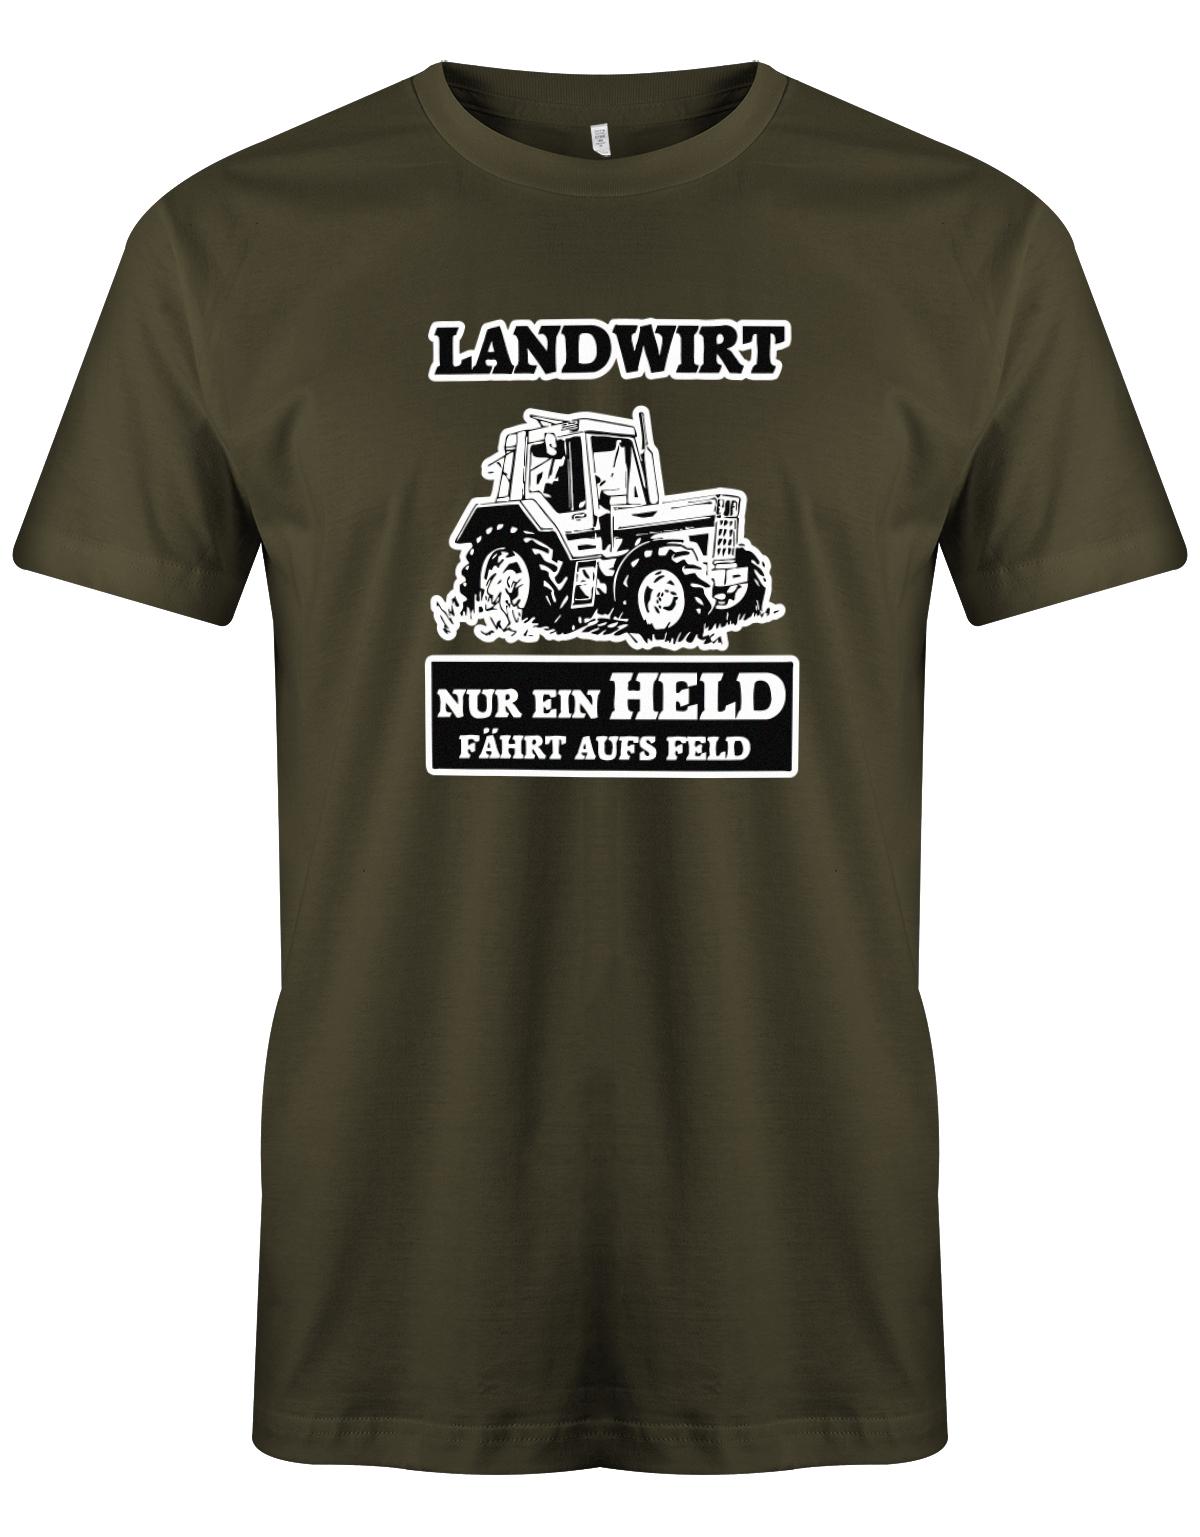 Landwirtschaft Shirt Männer - Nur ein Held fährt aufs Feld. Traktor army